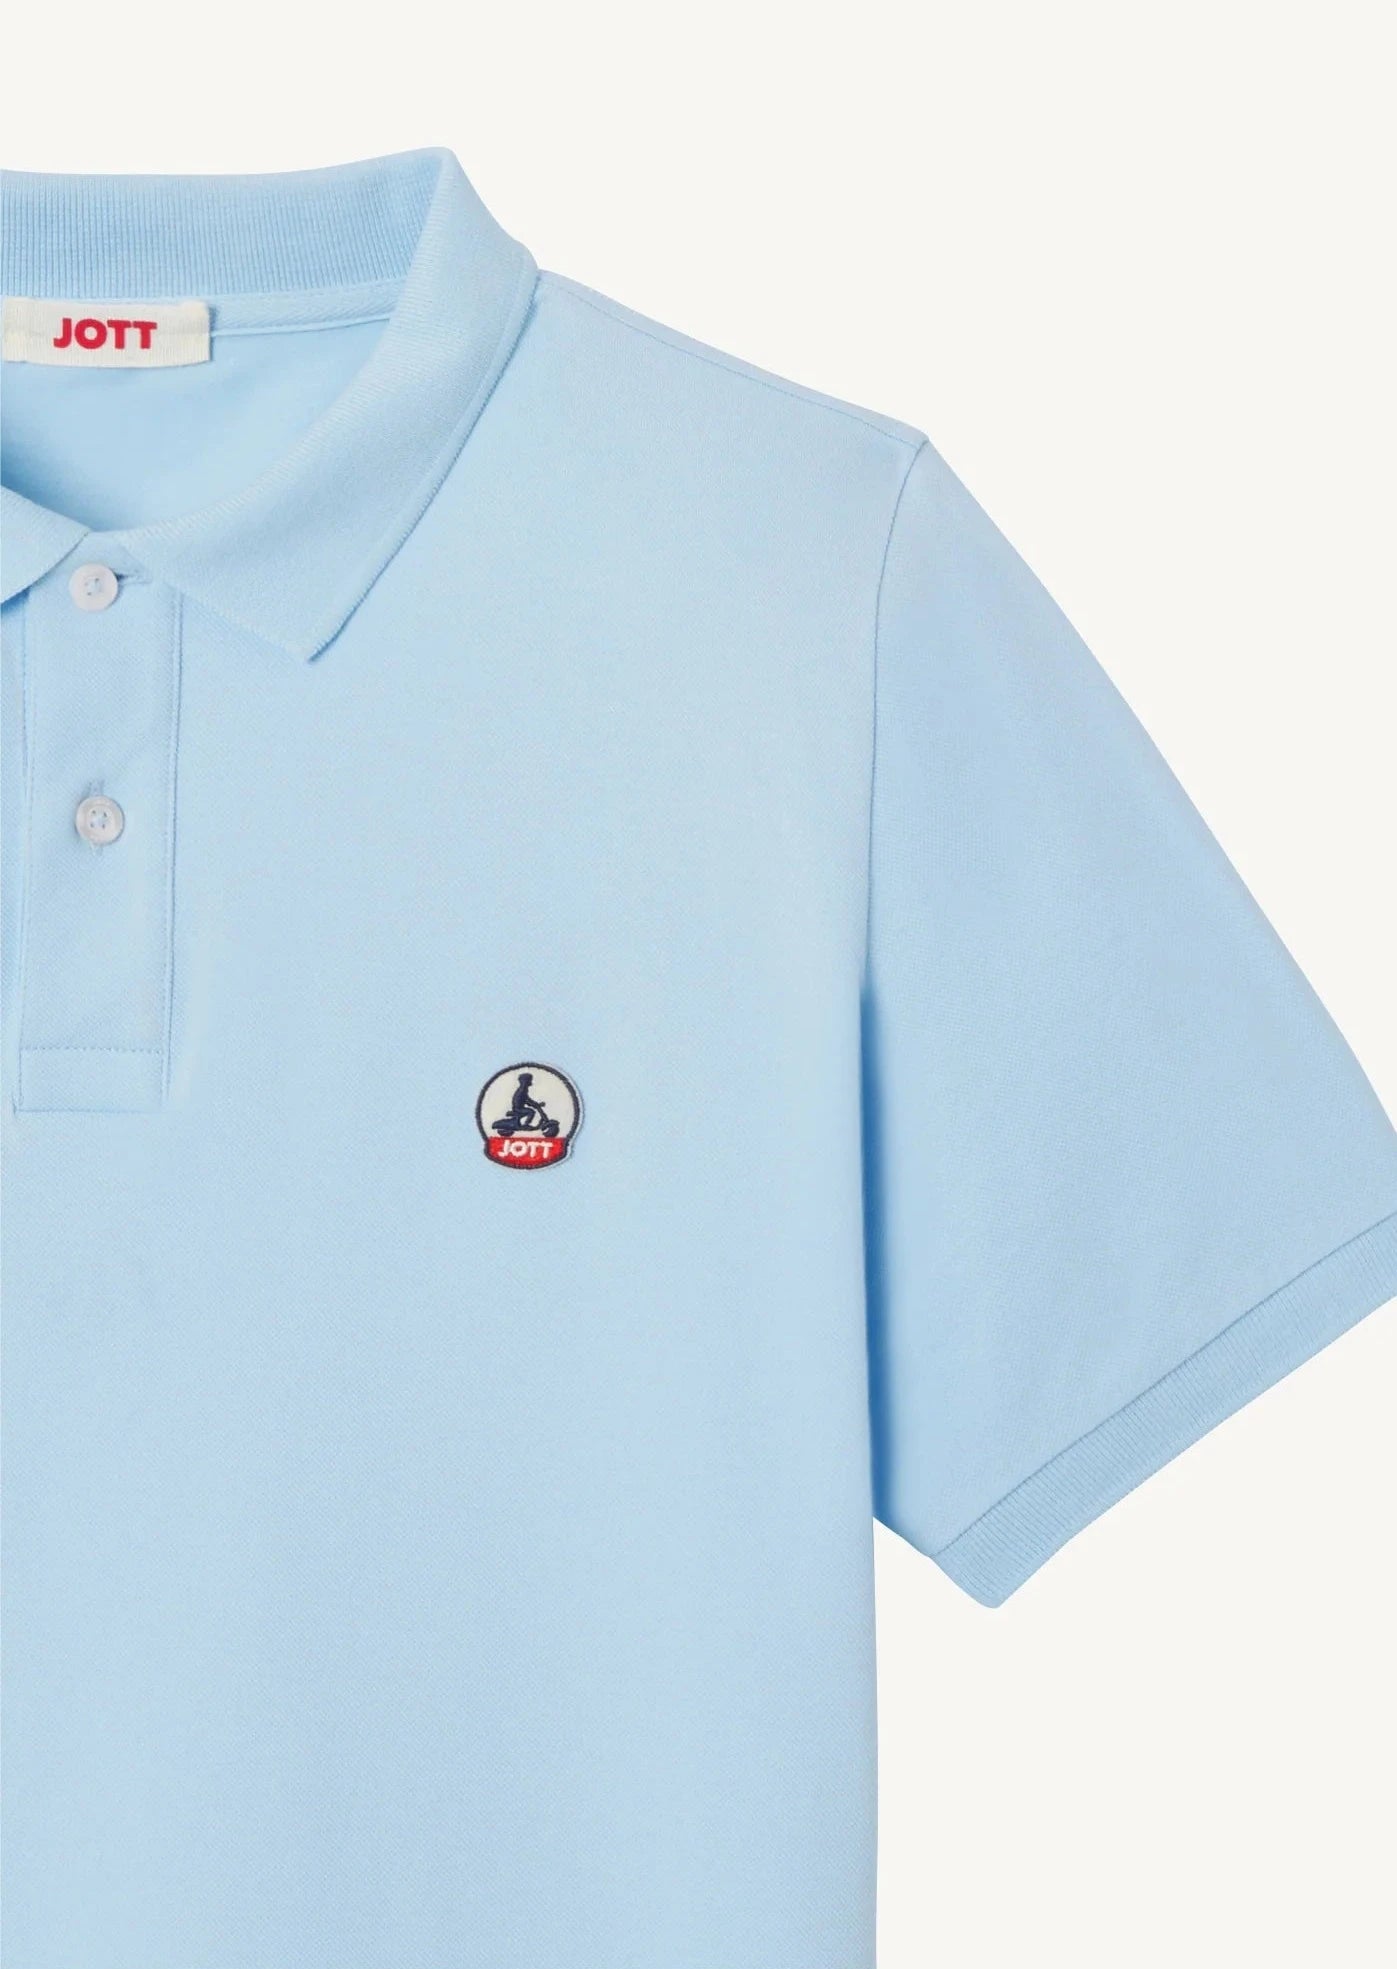 Polo homme JOTT bleu en coton bio | Georgespaul